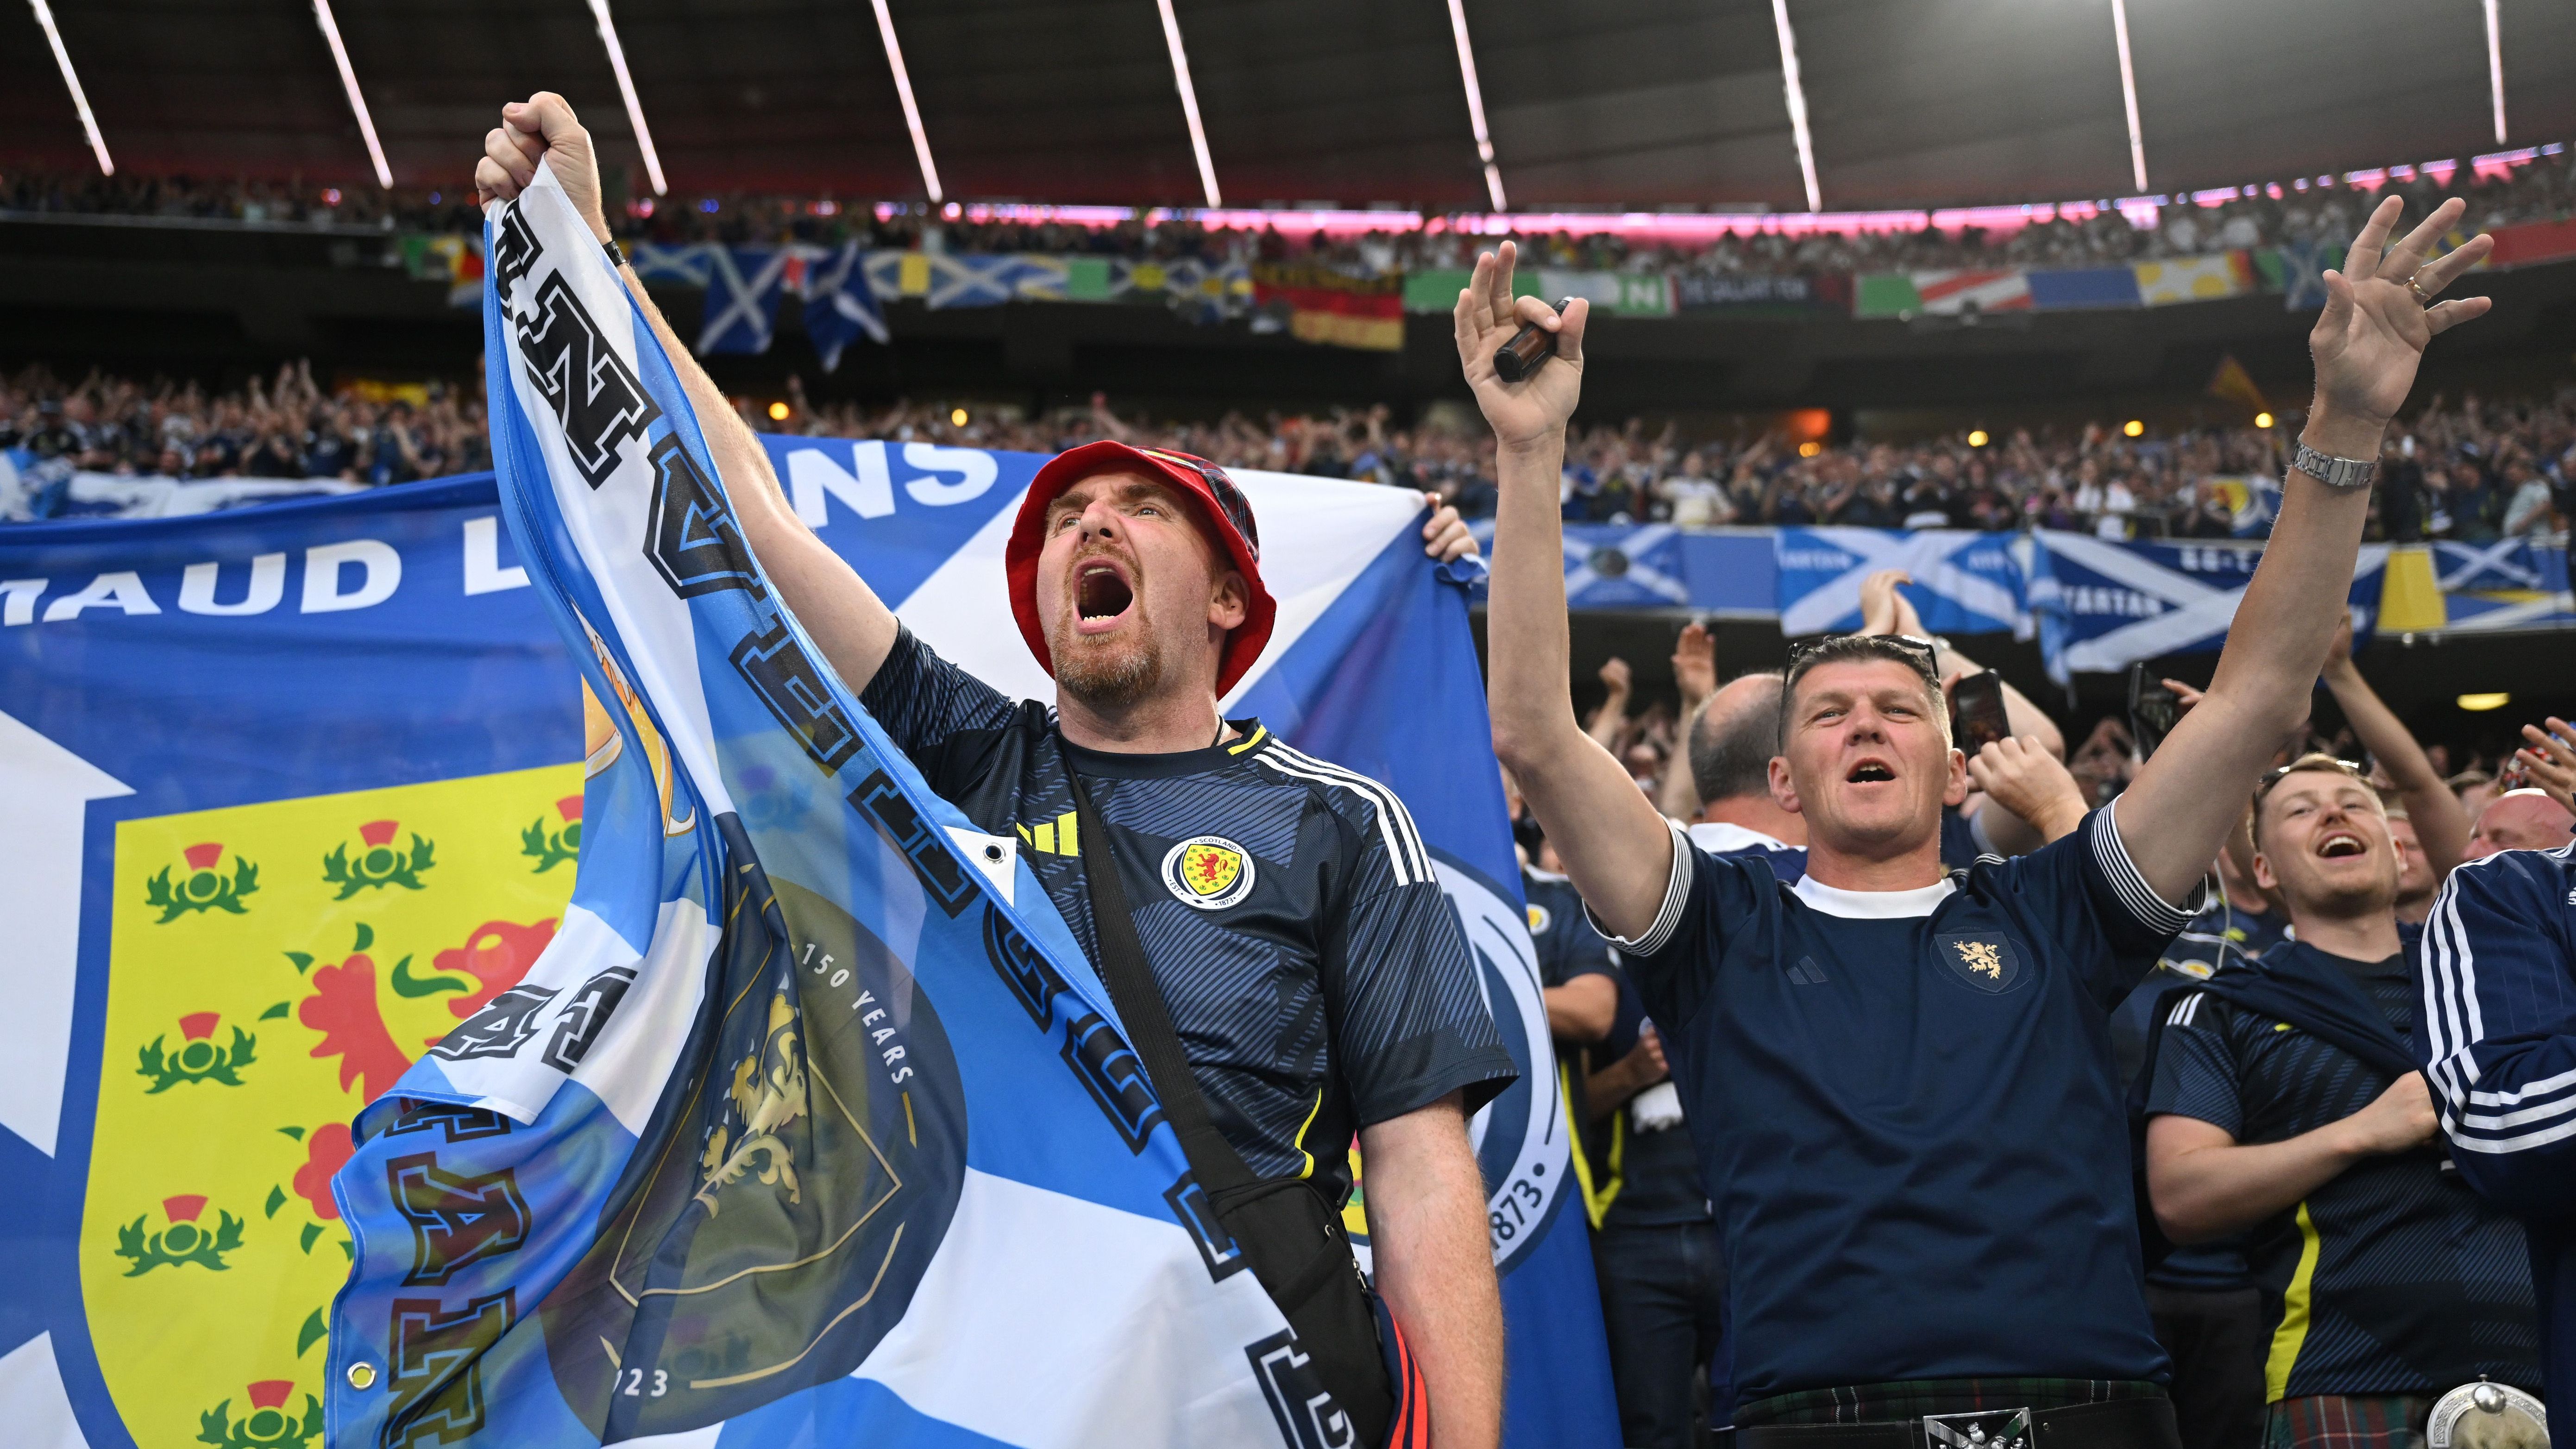 <strong>Schottlands Fans sorgen für Mega-Stimmung</strong><br>Tausende Fans aus Schottland sorgten bekannt stimmgewaltig für eine gigantische Atmosphäre in München.&nbsp;